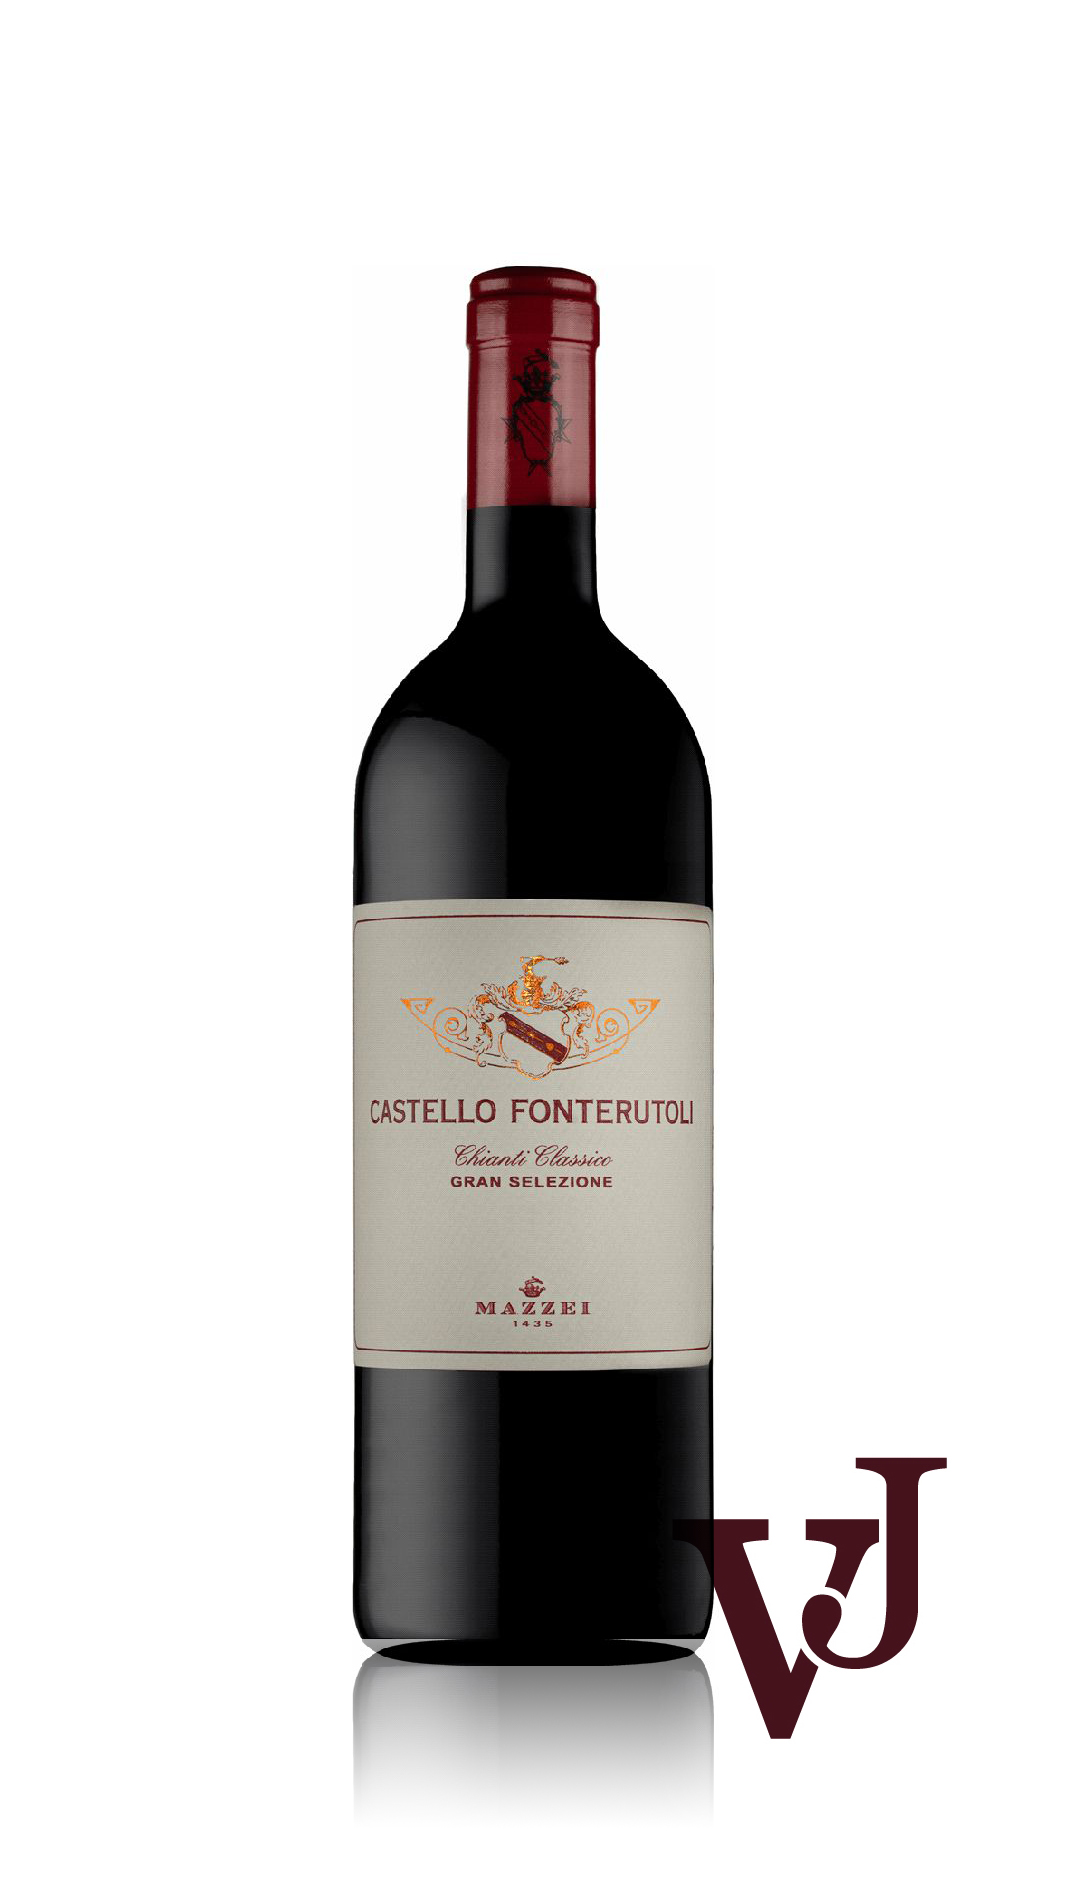 Rött Vin - Castello Fonterutoli artikel nummer 3213001 från producenten Marchesi Mazzei från området Italien